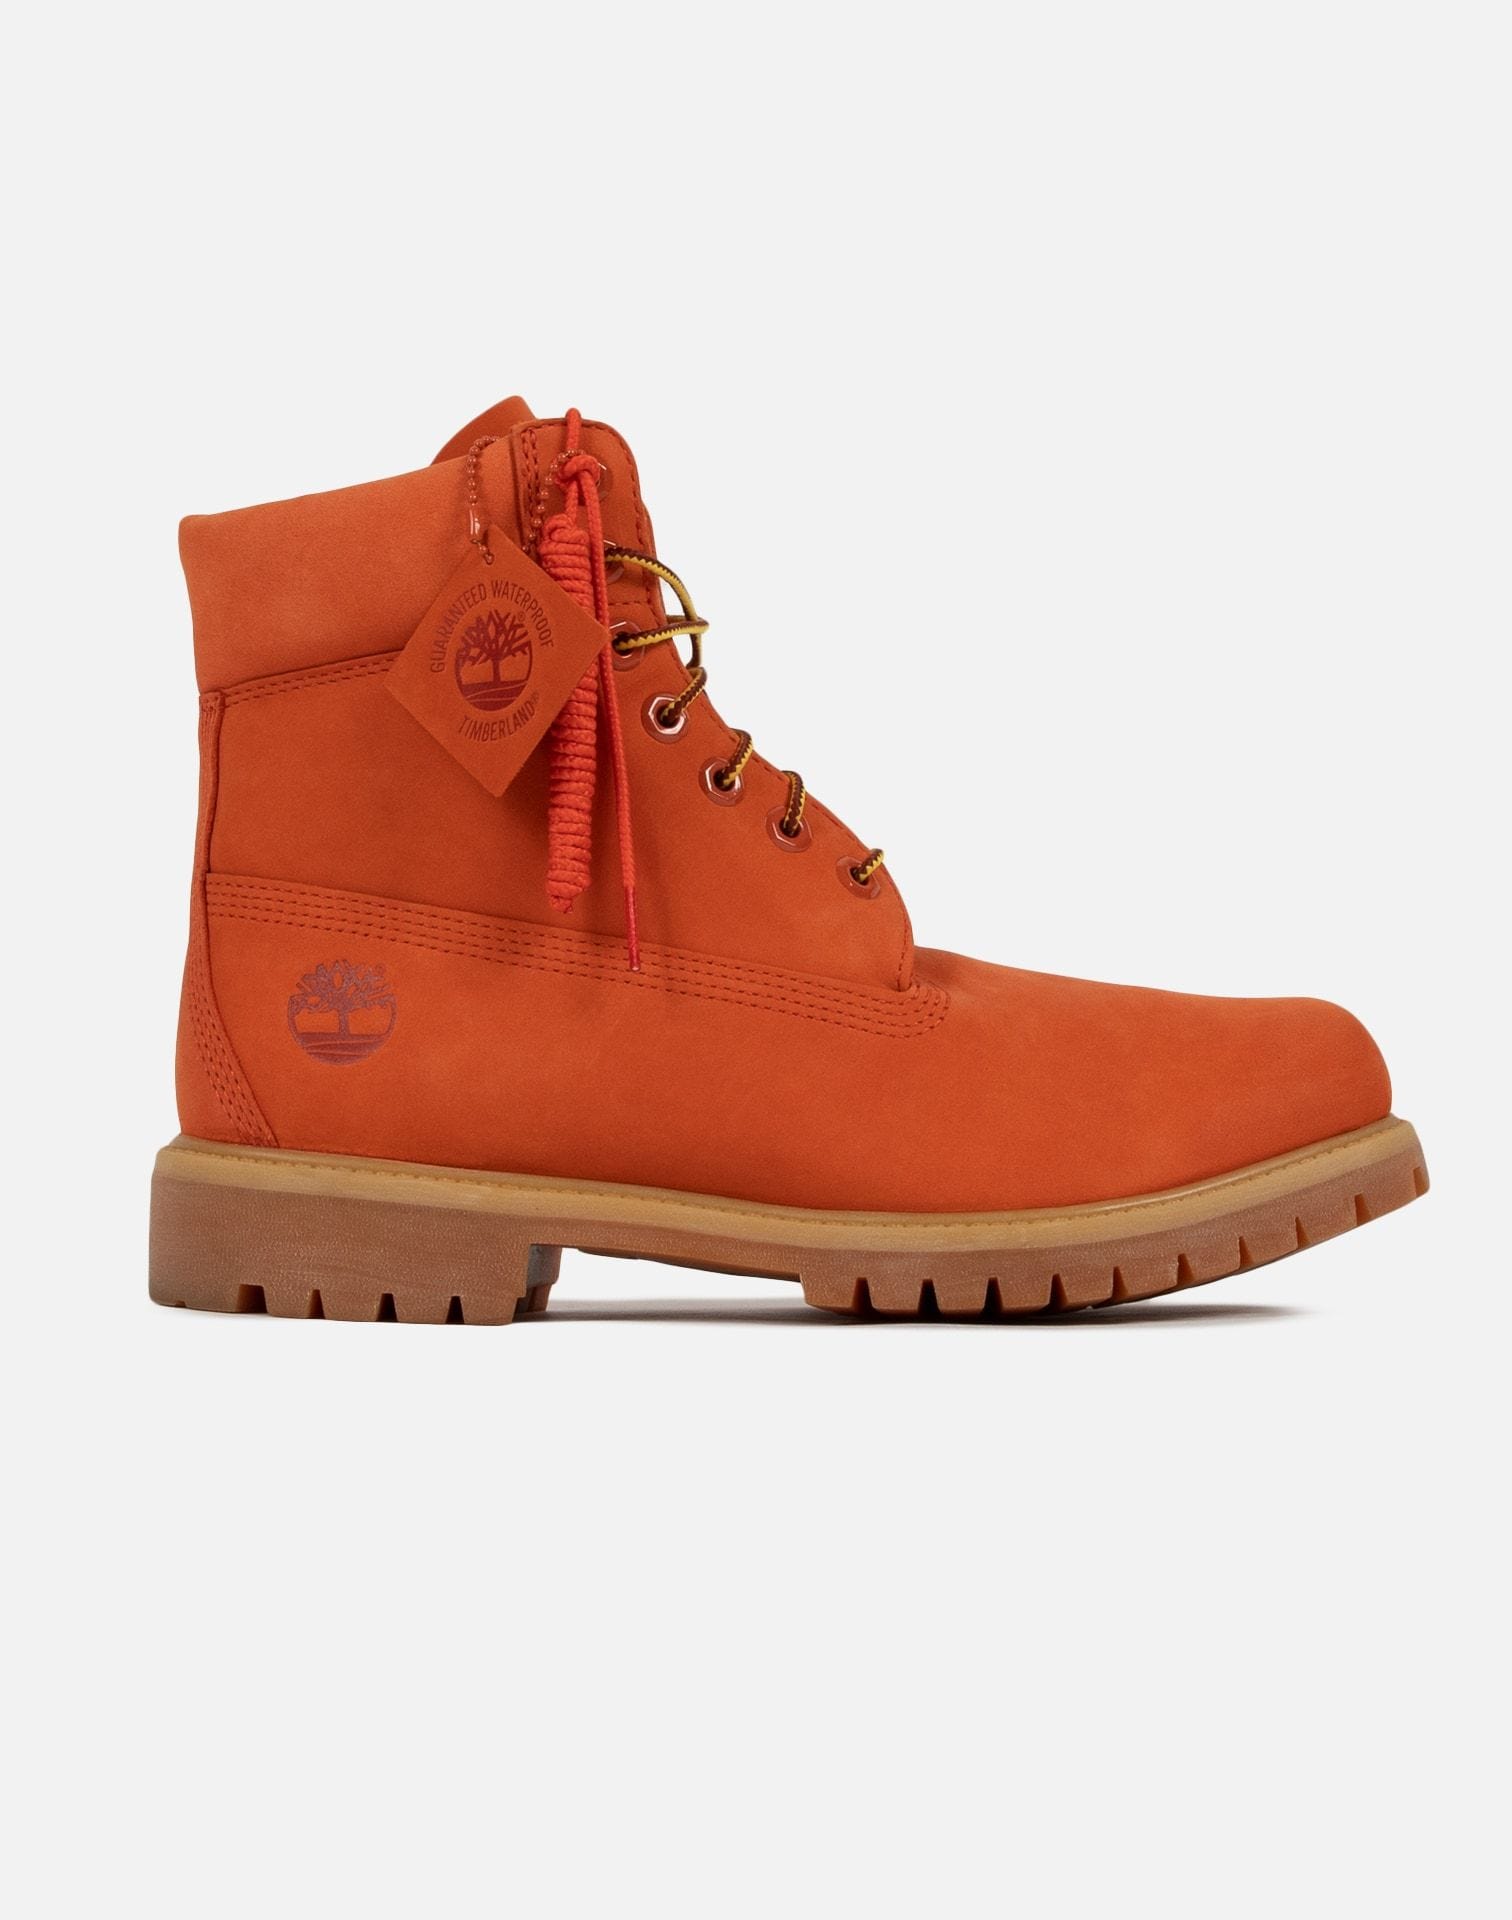 Timberland x DTLR Exclusive Men's 6-Inch Premium Waterproof 'Orange Blaze' Boots